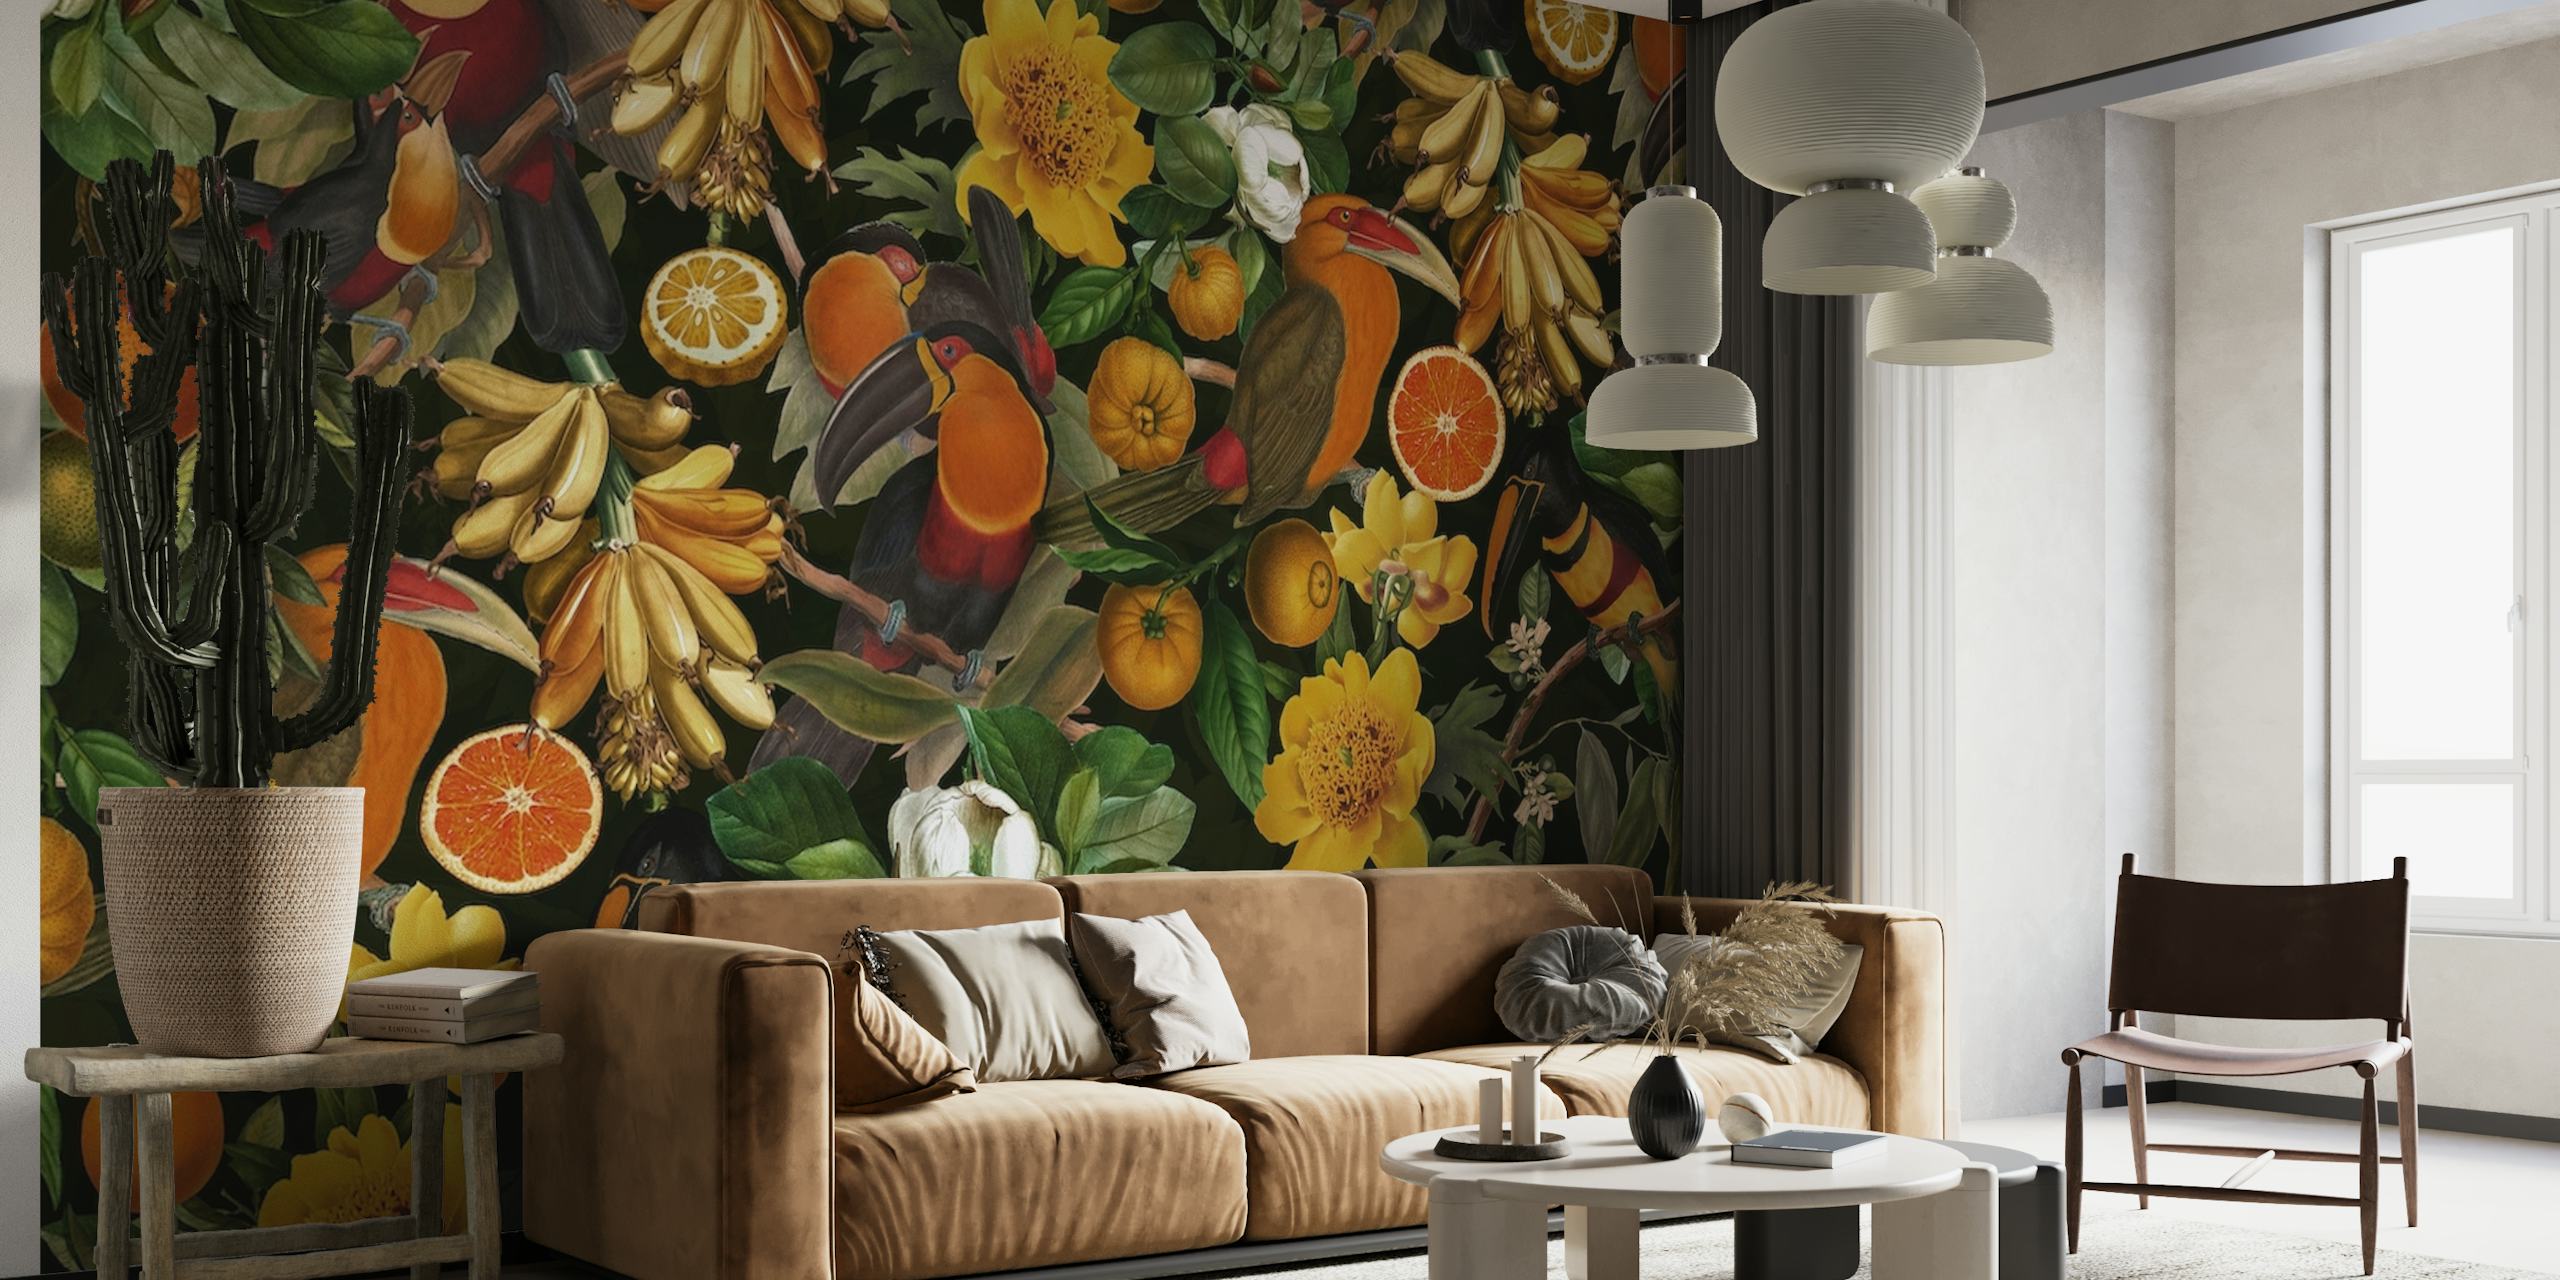 Oiseaux exotiques au milieu d'une flore tropicale sur un fond riche et sombre créant une fresque murale sereine avec une scène de jungle nocturne.